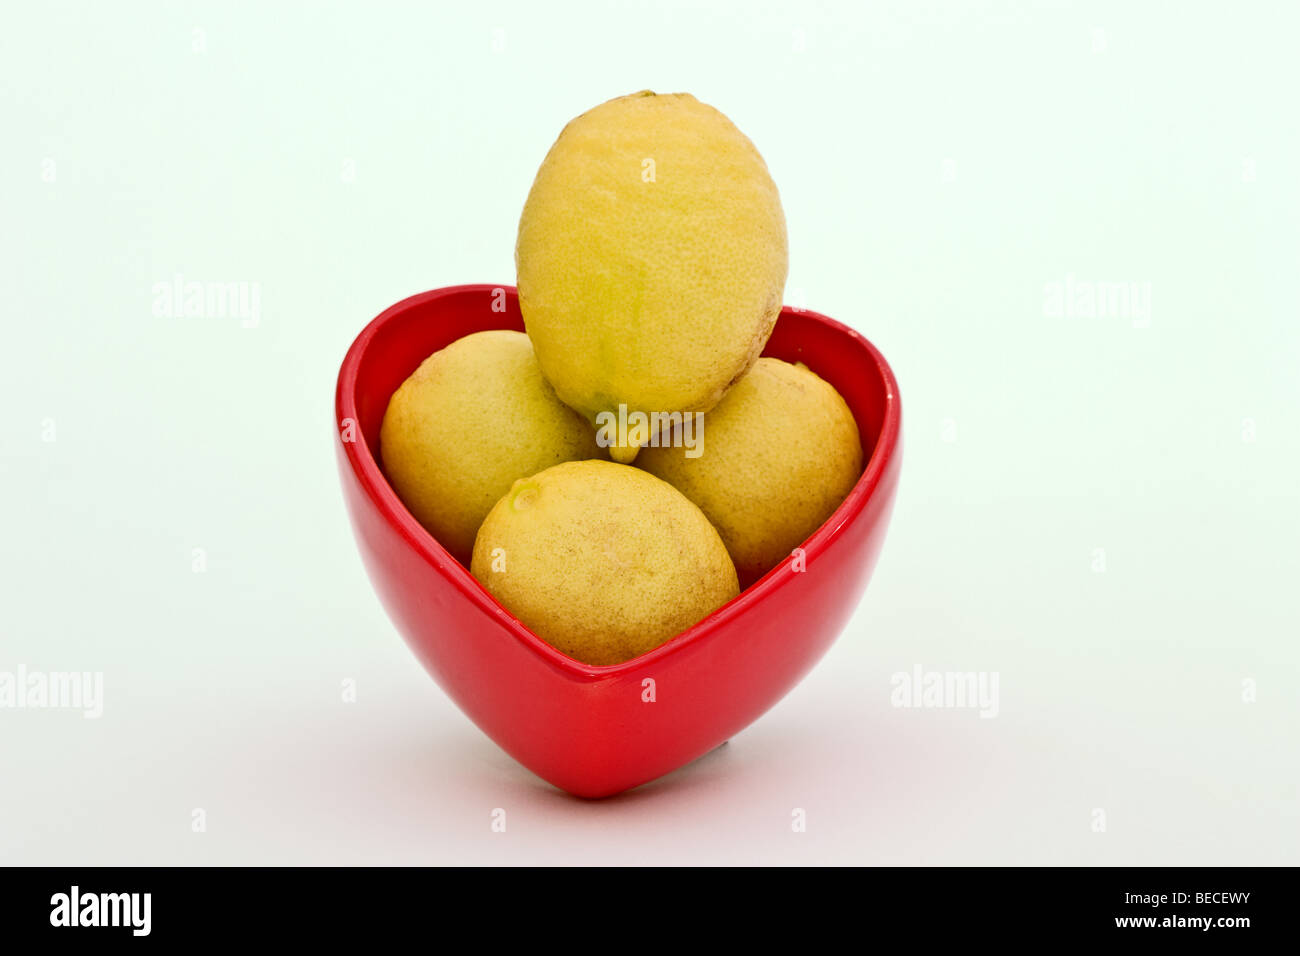 En forme de coeur rouge dur rempli de limes clés jaune mûr Banque D'Images